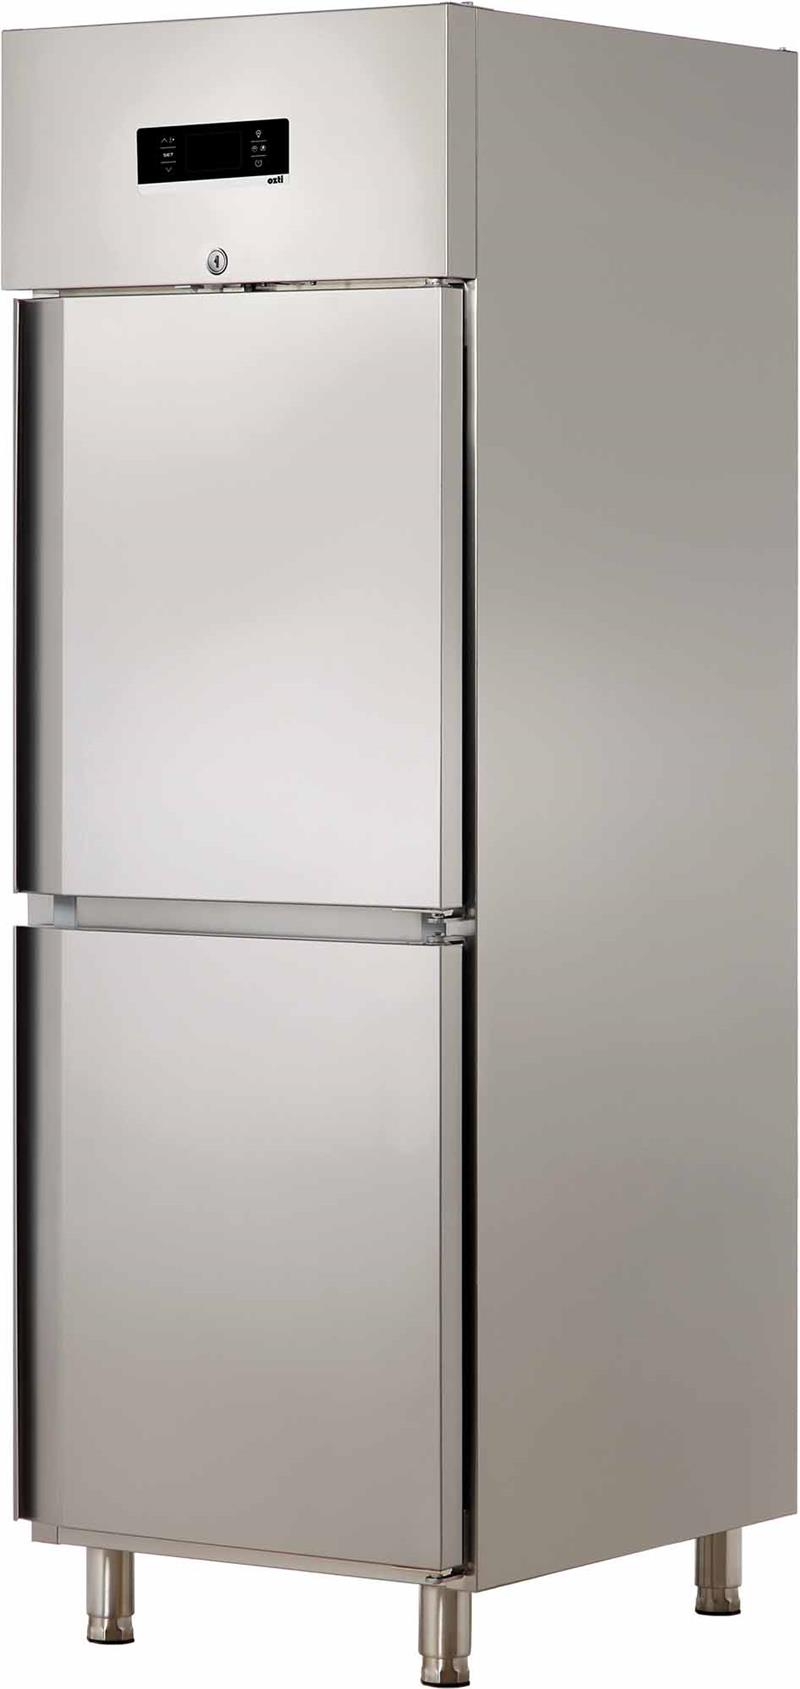 Stainless Steel Door Refrigerator (Vertical)